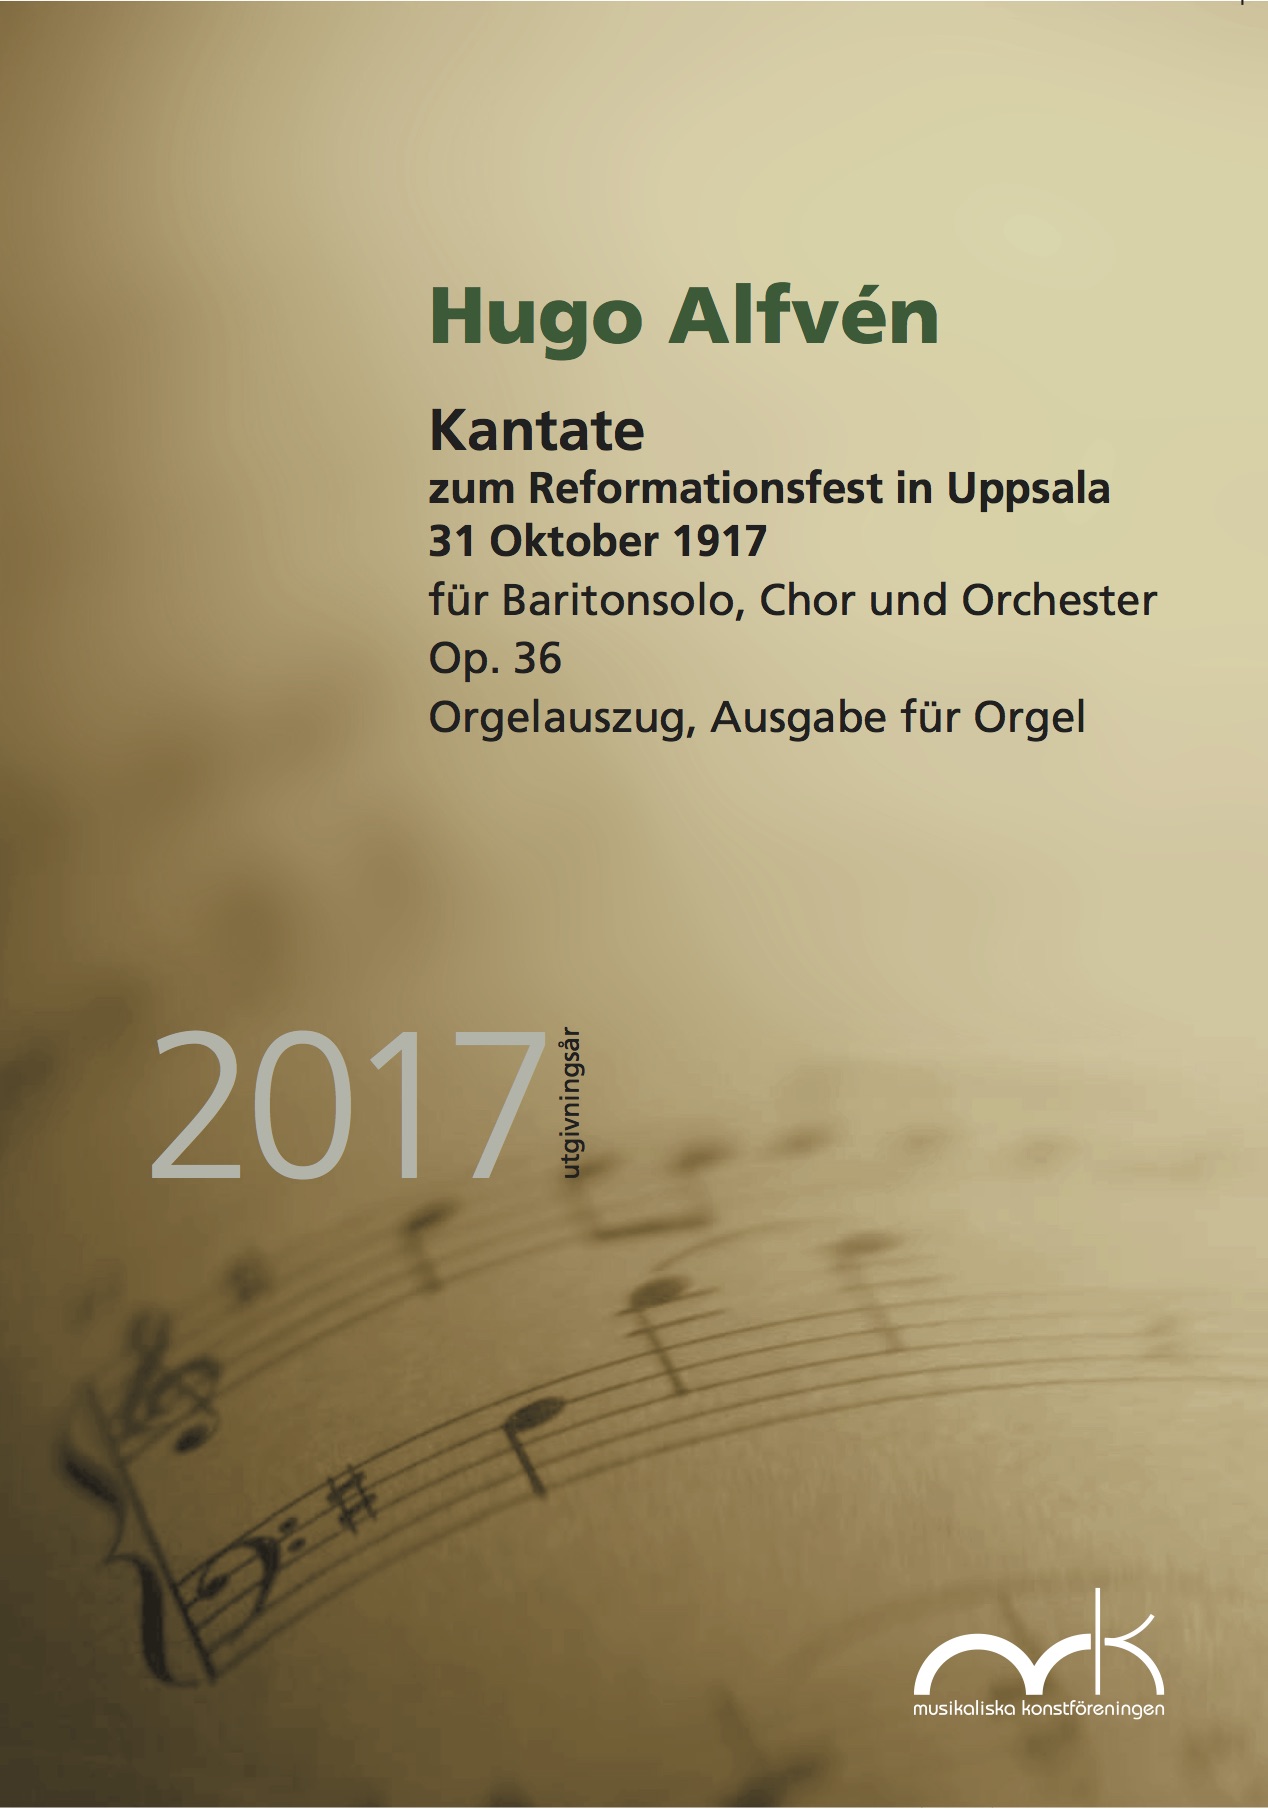 Omslag Alfvén organ part (German)